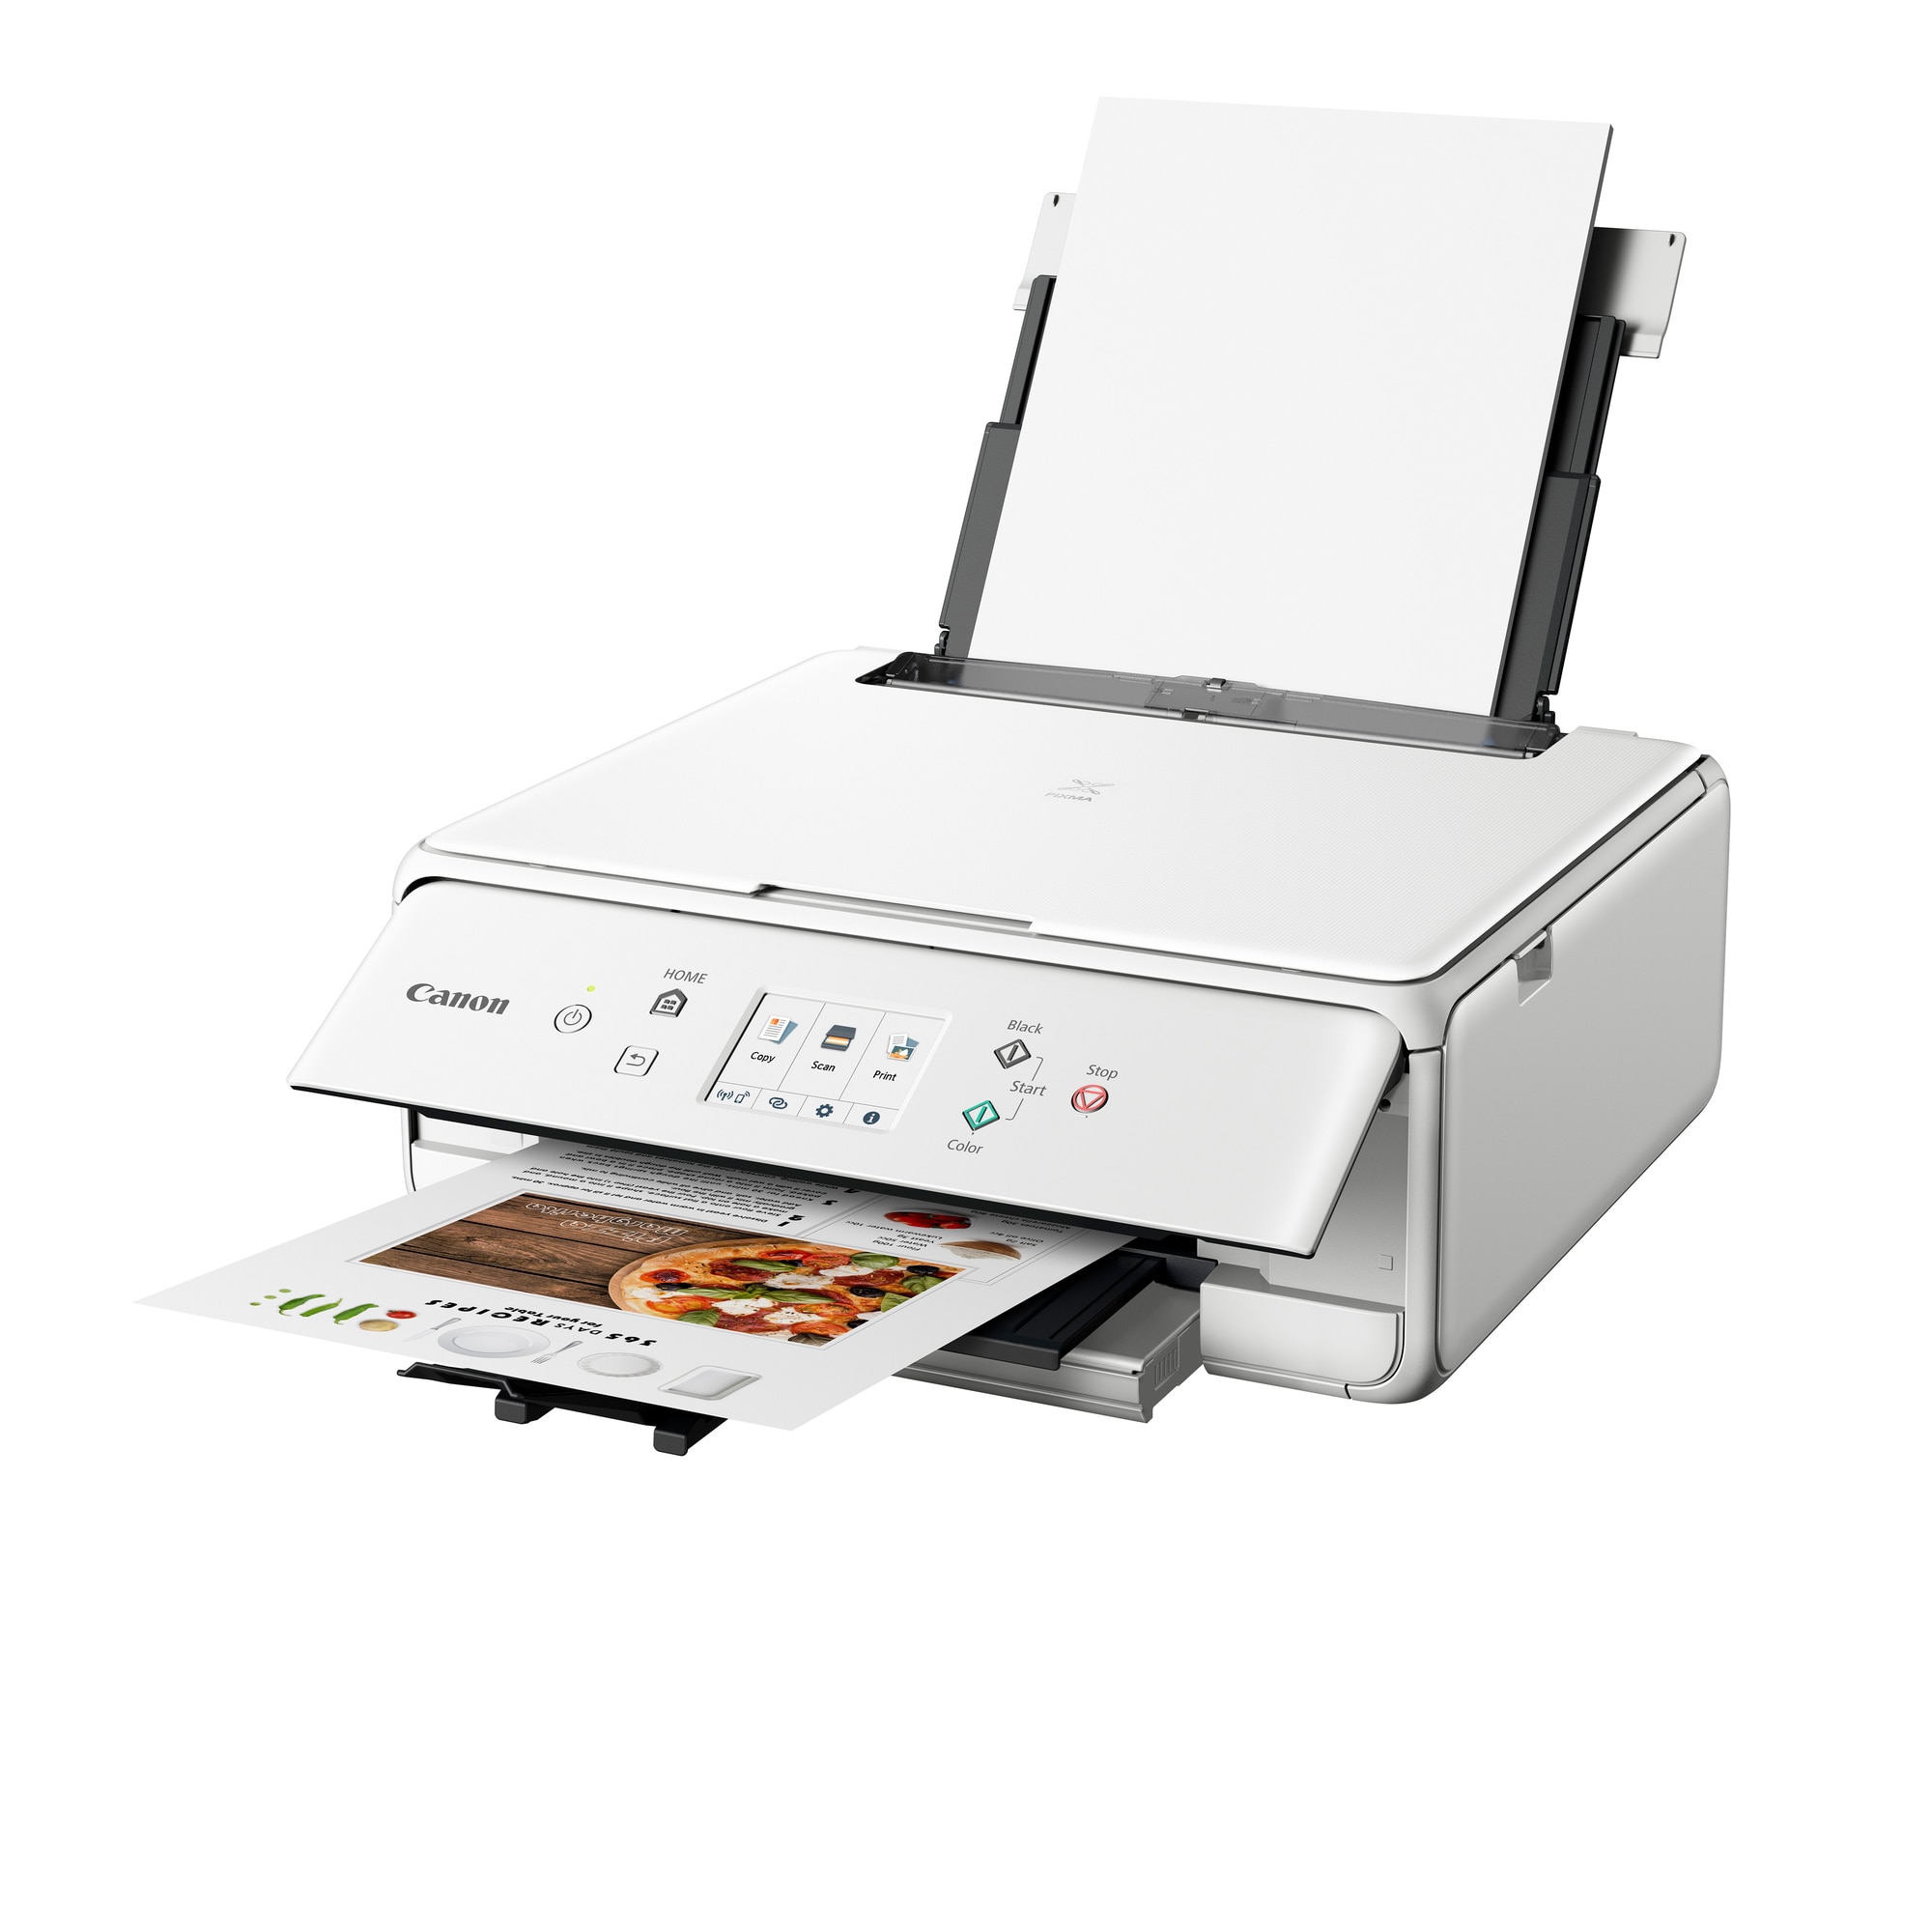 Printer og scanner - Køb billig, trådløs printer og scanner ...